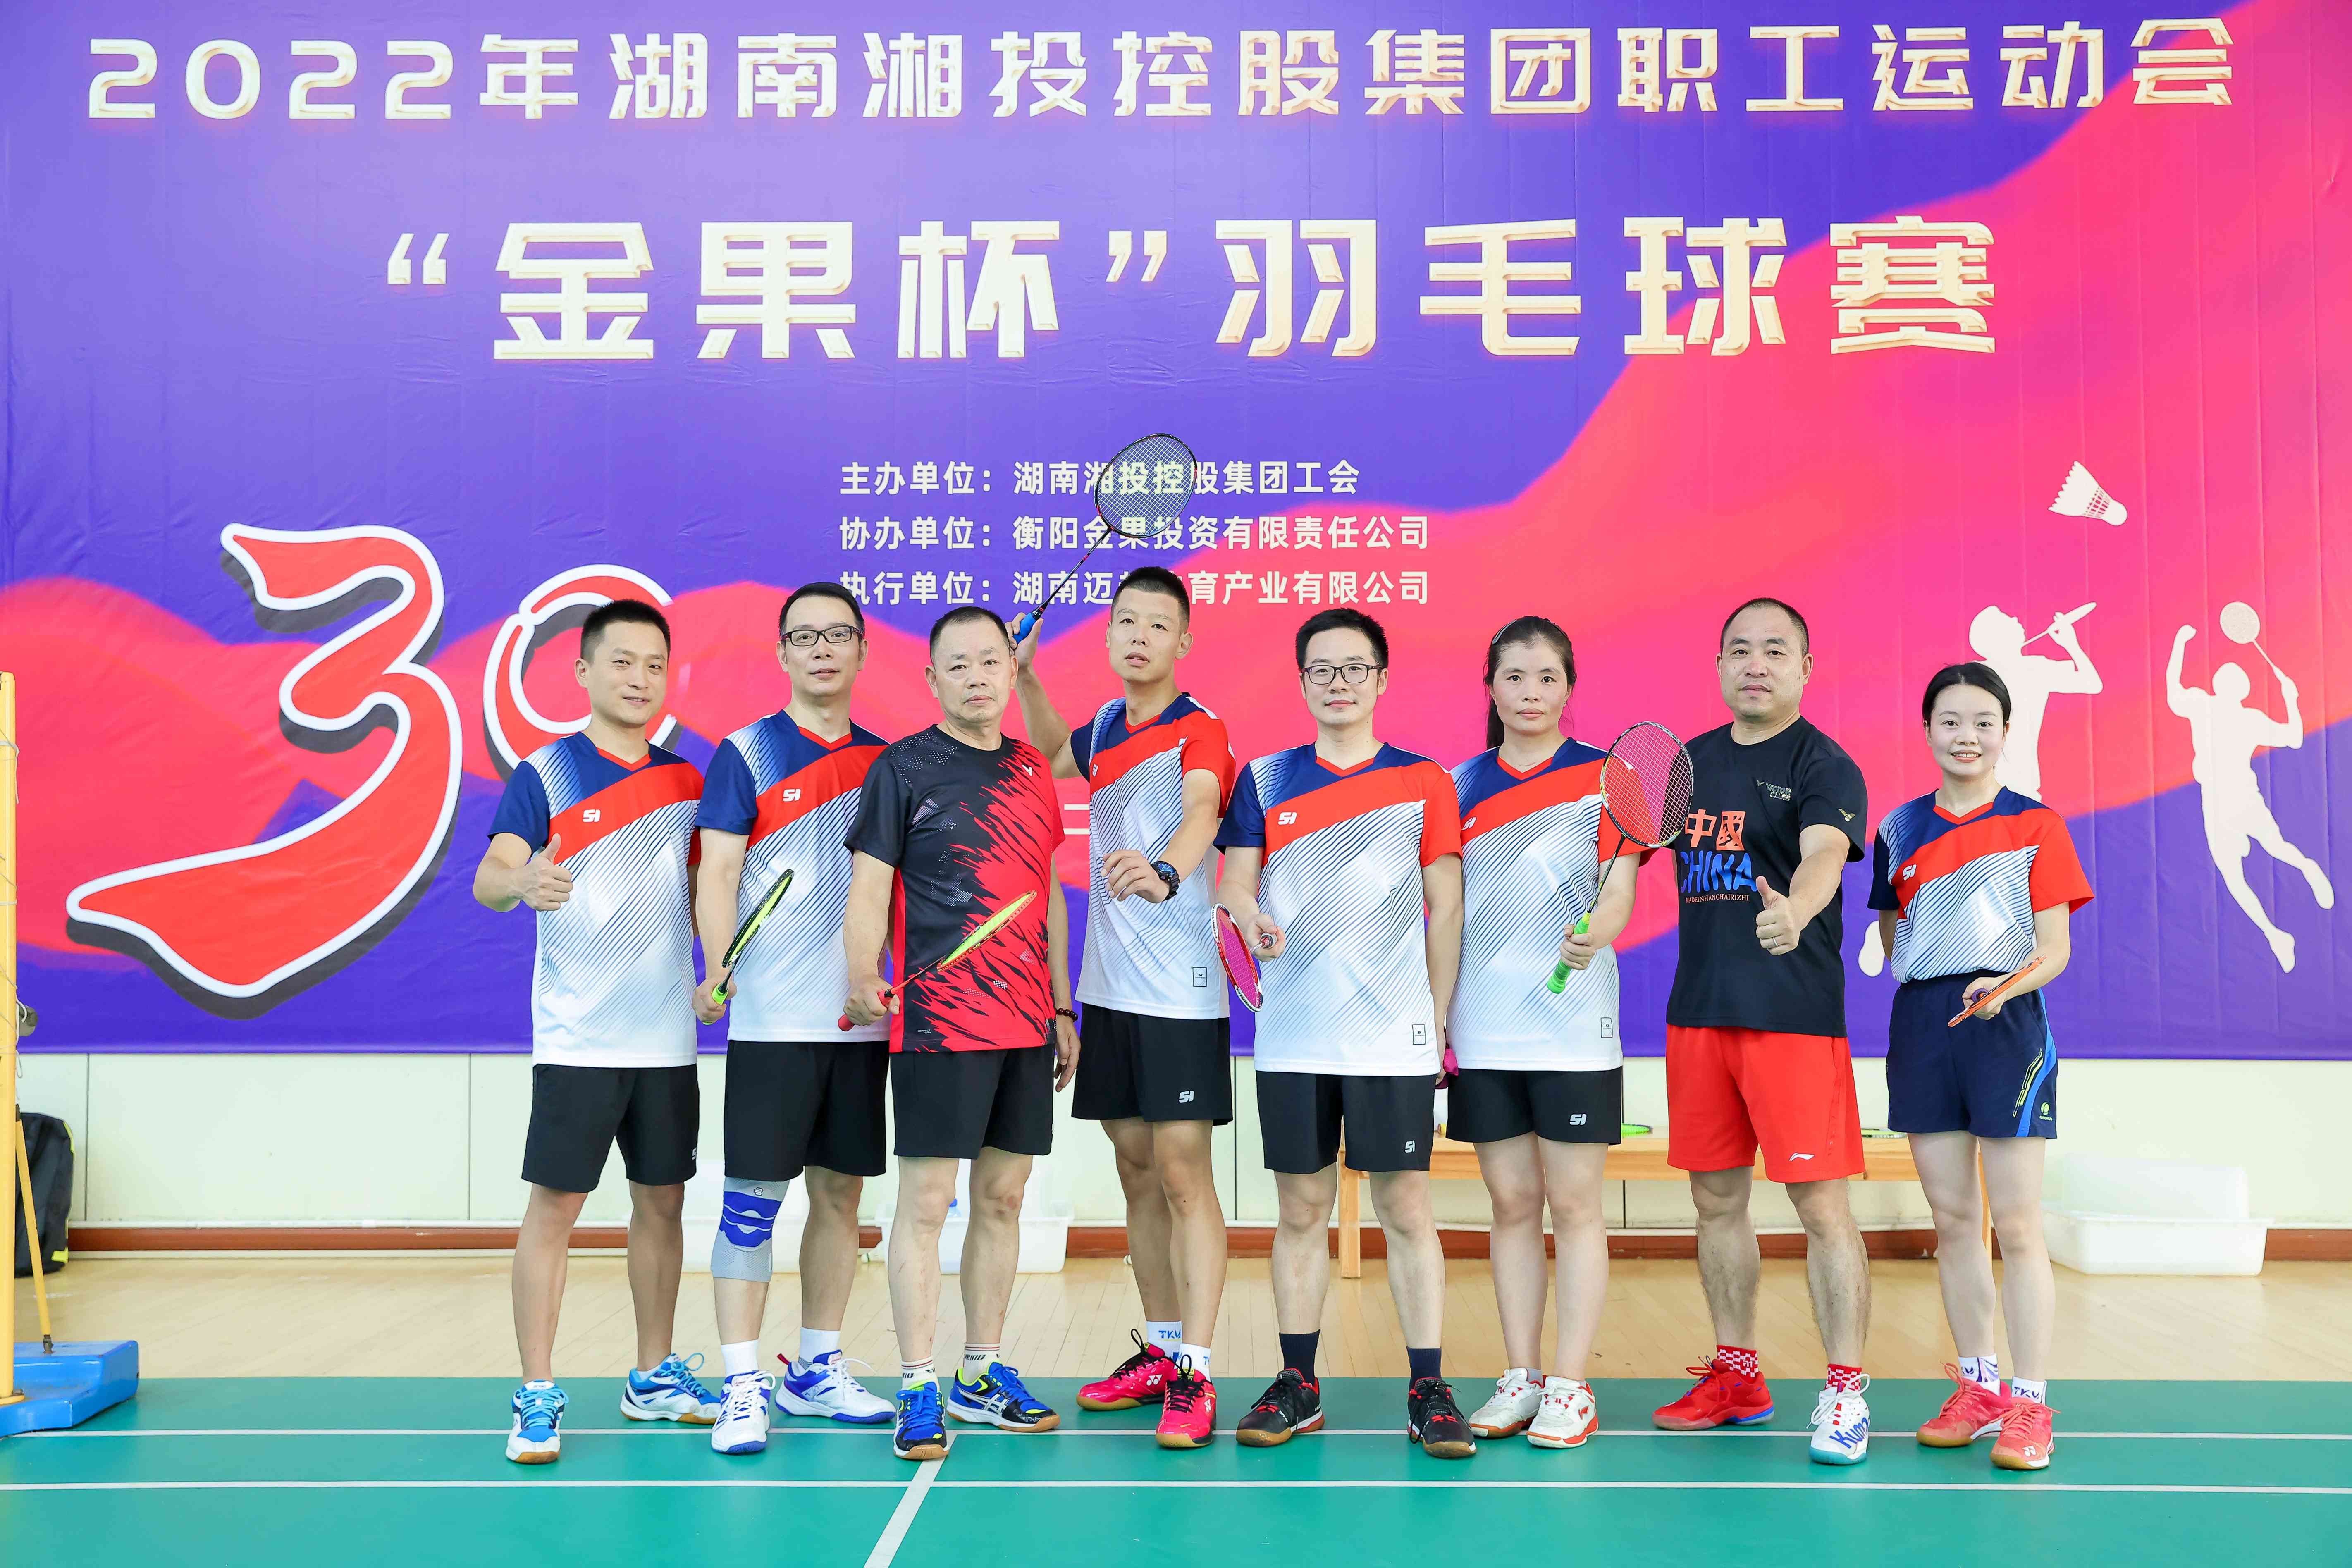 西班牙VS意大利（中国）有限公司参加湘投集团职工运动会羽毛球赛 取得好成绩